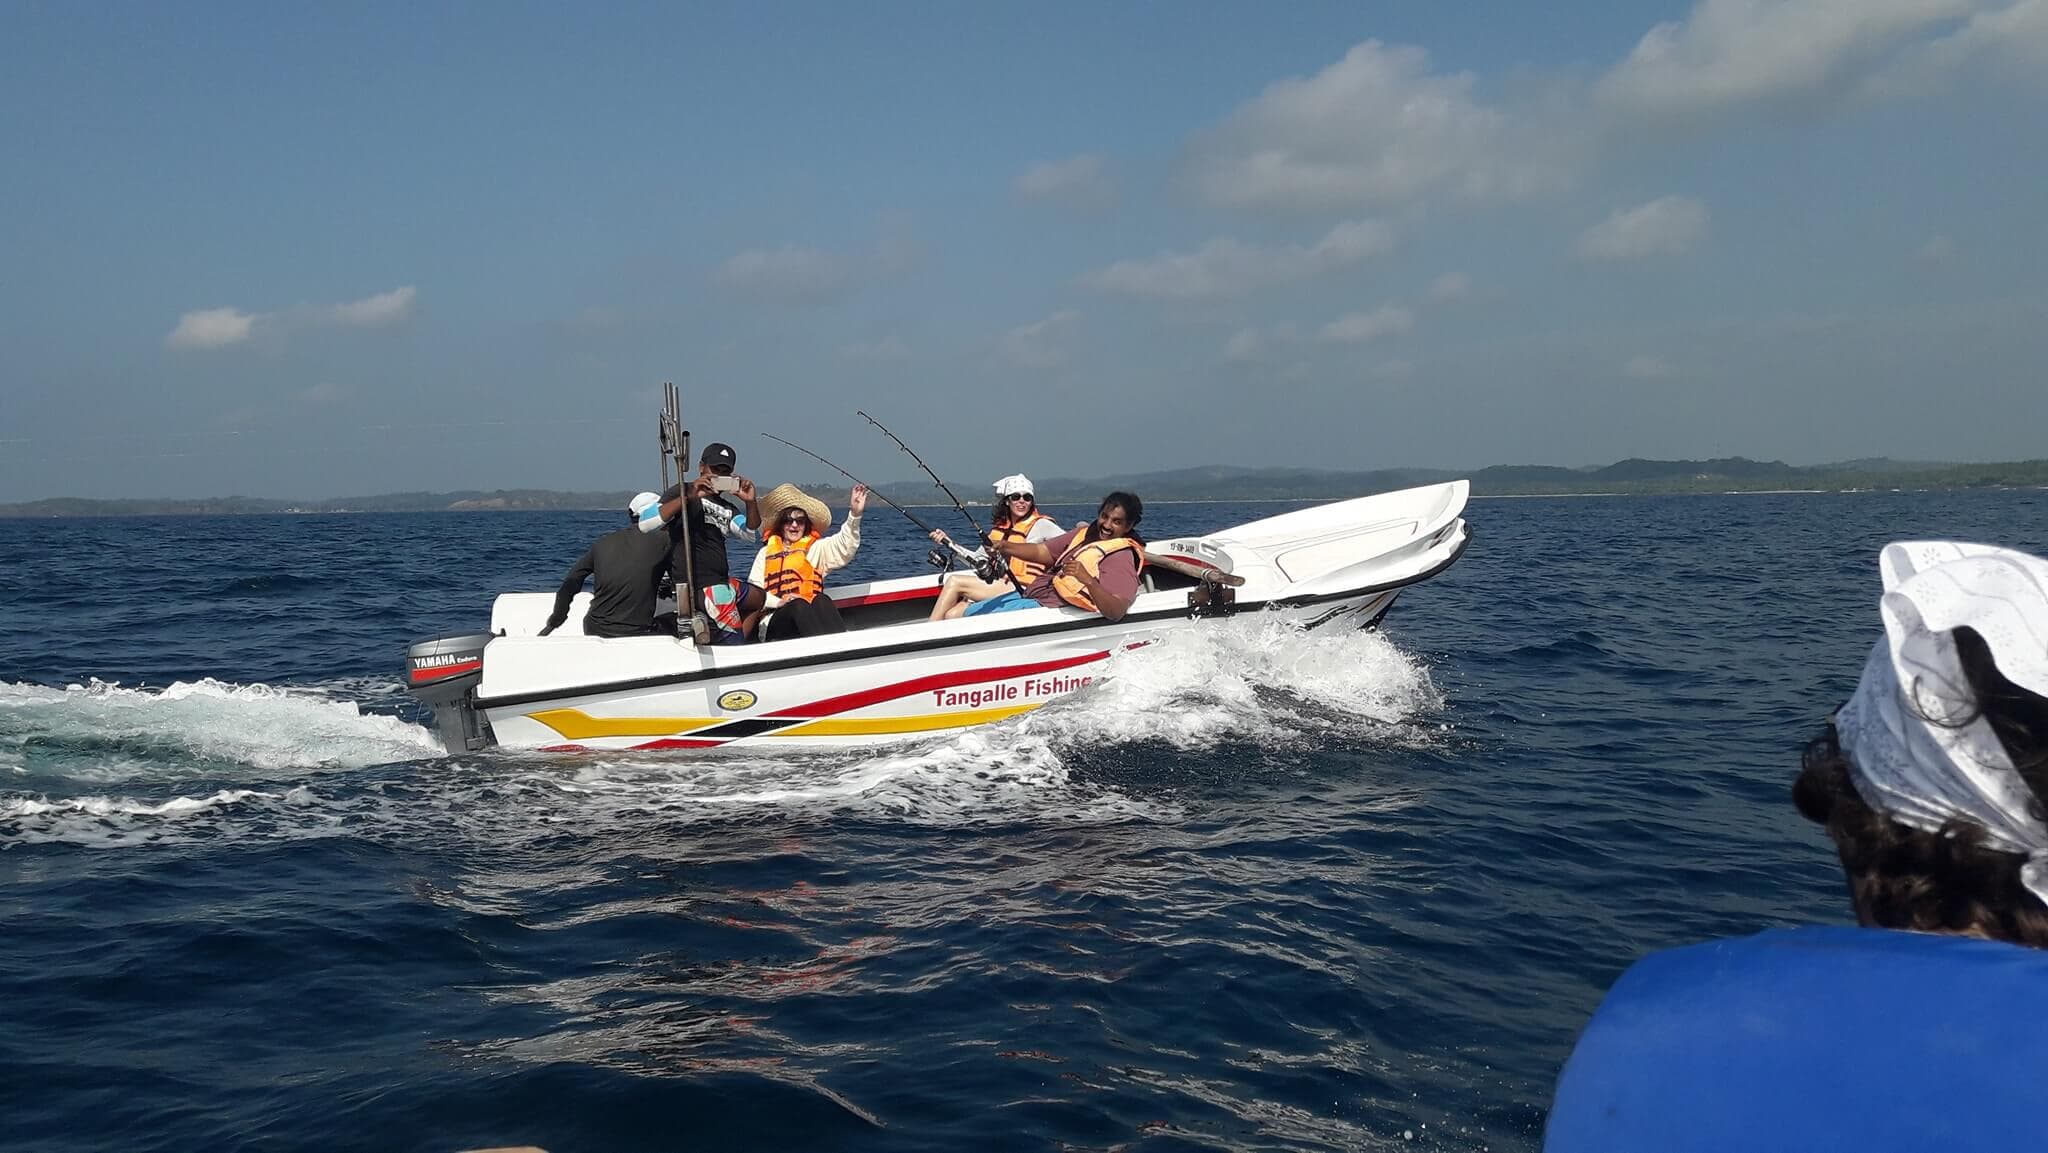 يقوم السائحون بجولة بقارب صيد لصيد الأسماك في بحر Tangalle